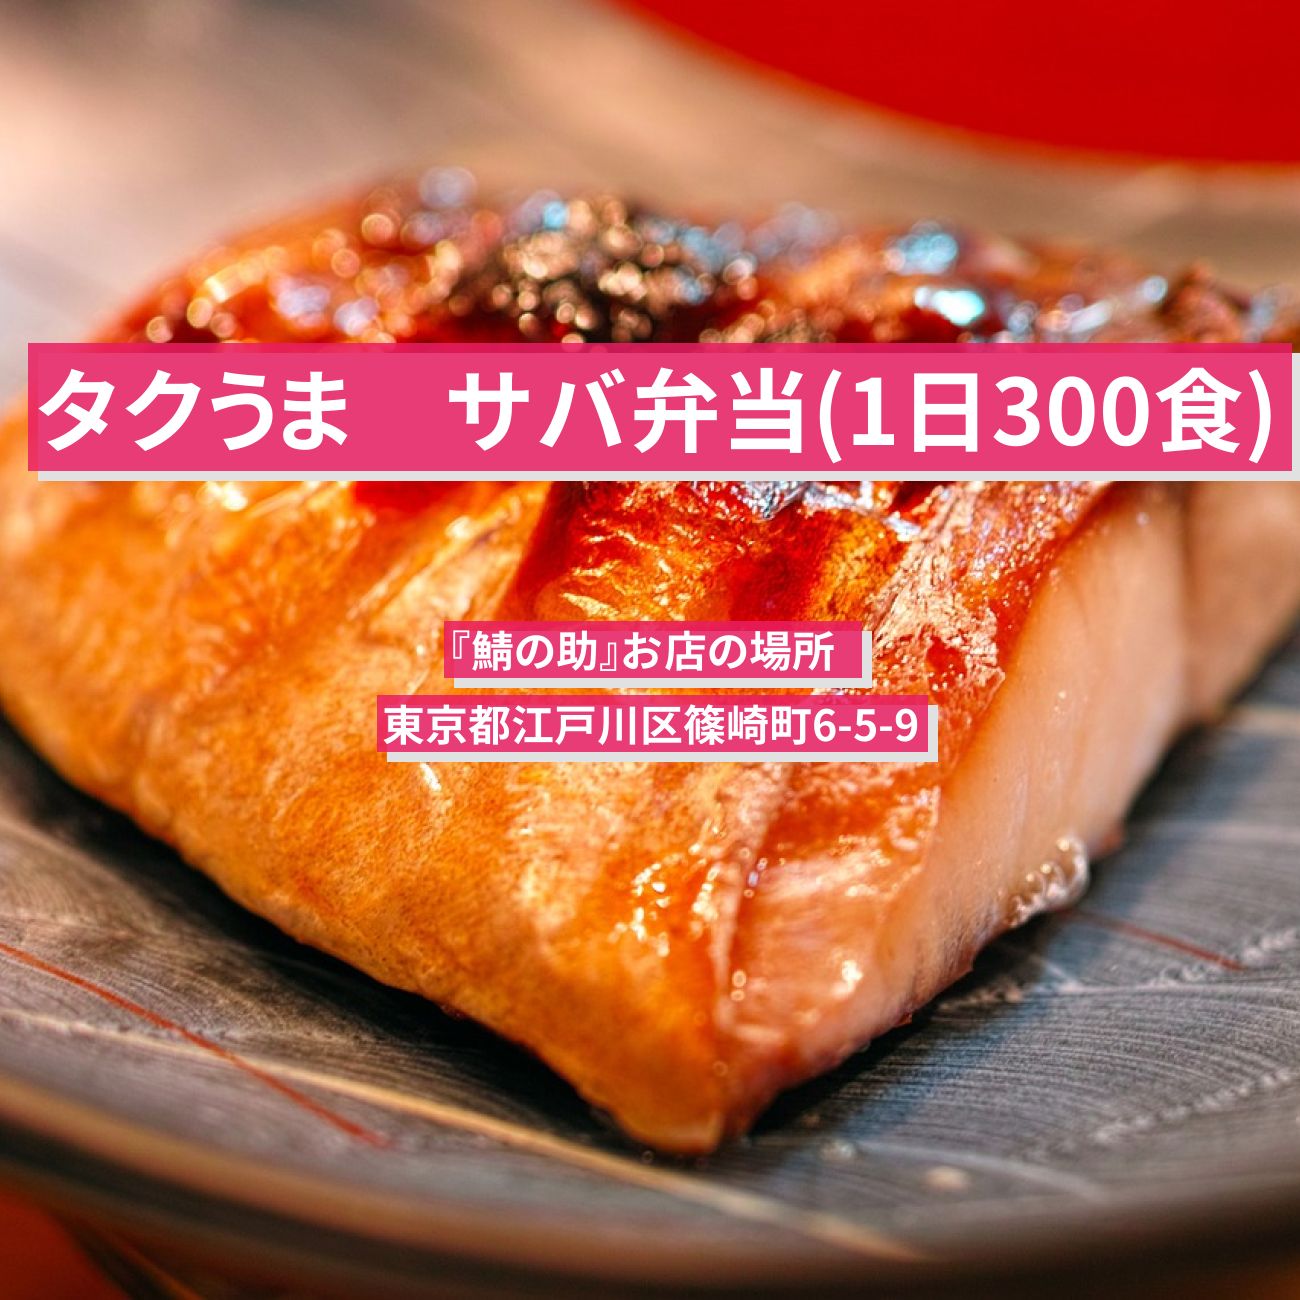 【タクうま】炭火サバ弁当(1日300食)『鯖の助』篠崎のお店の場所  〔タクシー運転手さん一番うまい店に連れてって〕